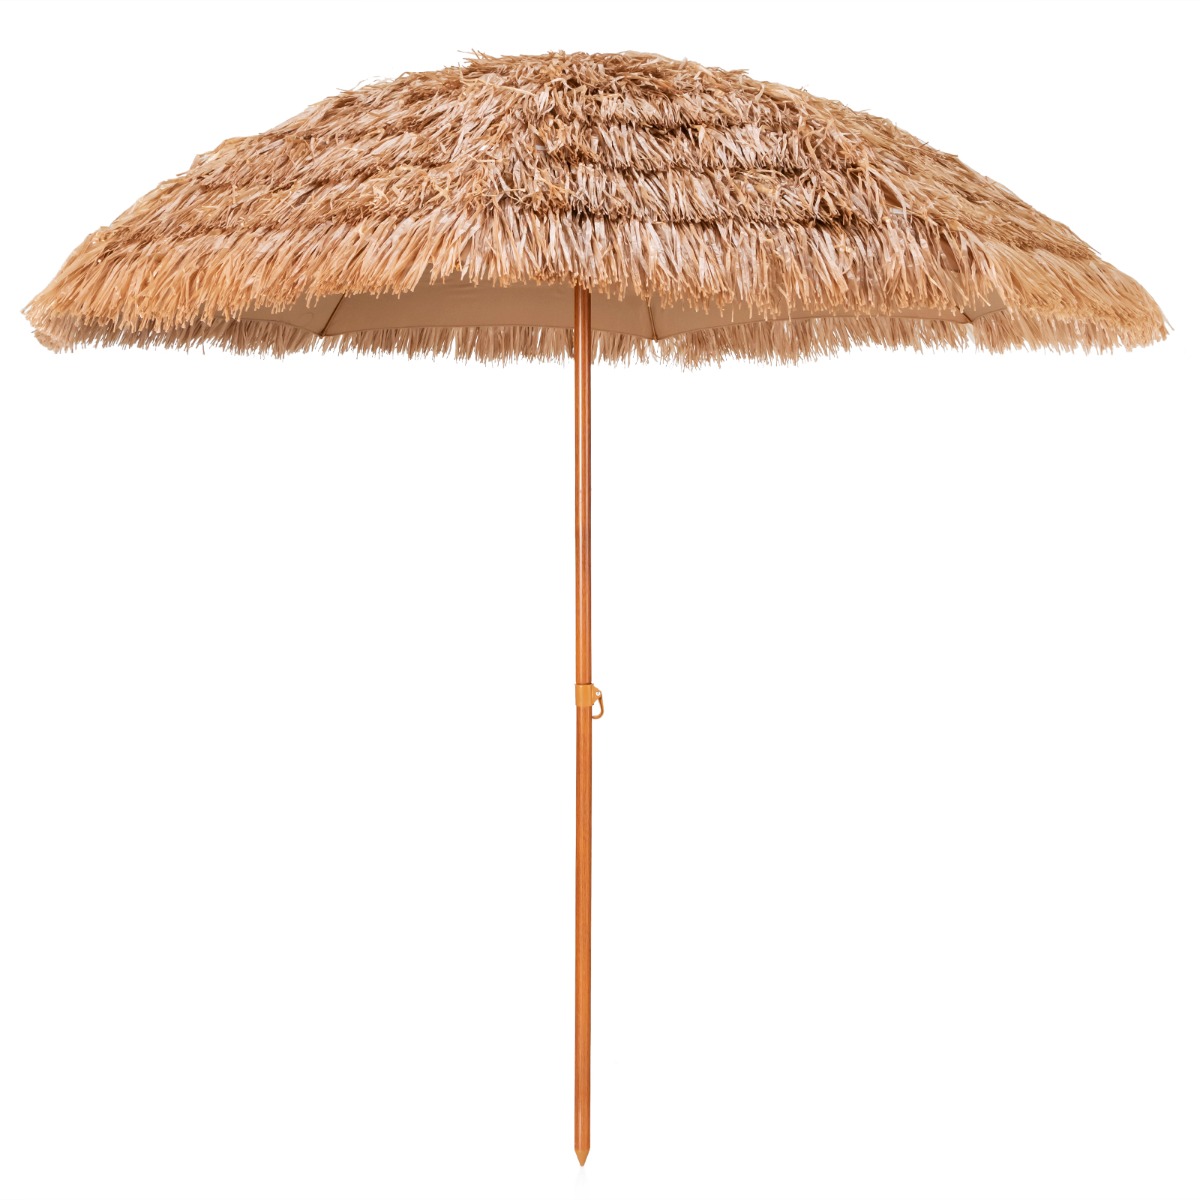 Ombrello tiki con tetto di paglia da 243cm, Ombrello hula da esterno hawaiano con 8 stecche in metallo Naturale